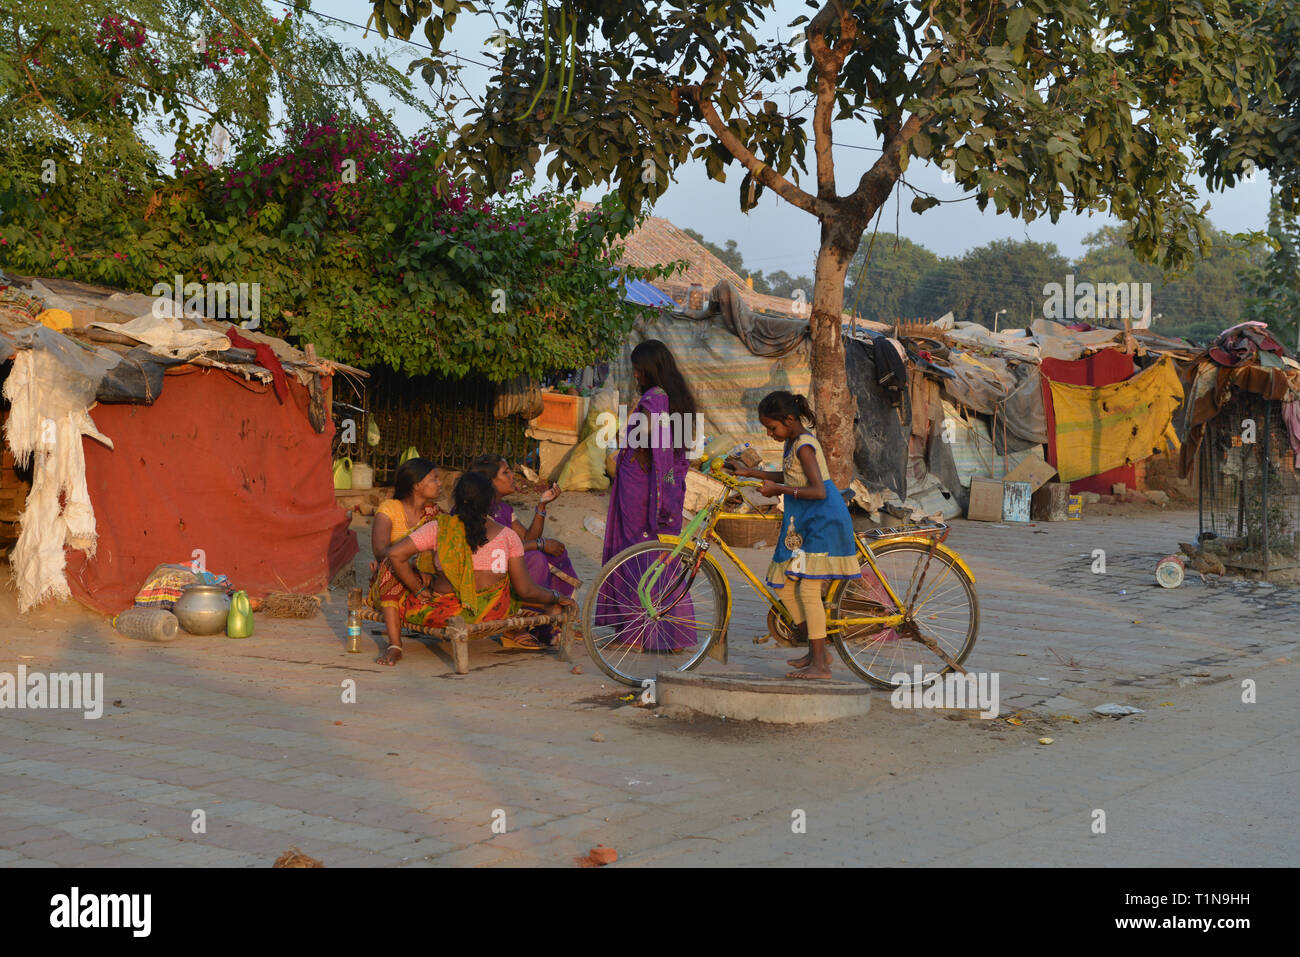 L'INDE, Bodh Gaya. malgré leur pauvreté les femmes devant leurs logements urbains montrent la confiance en soi et la dignité Banque D'Images